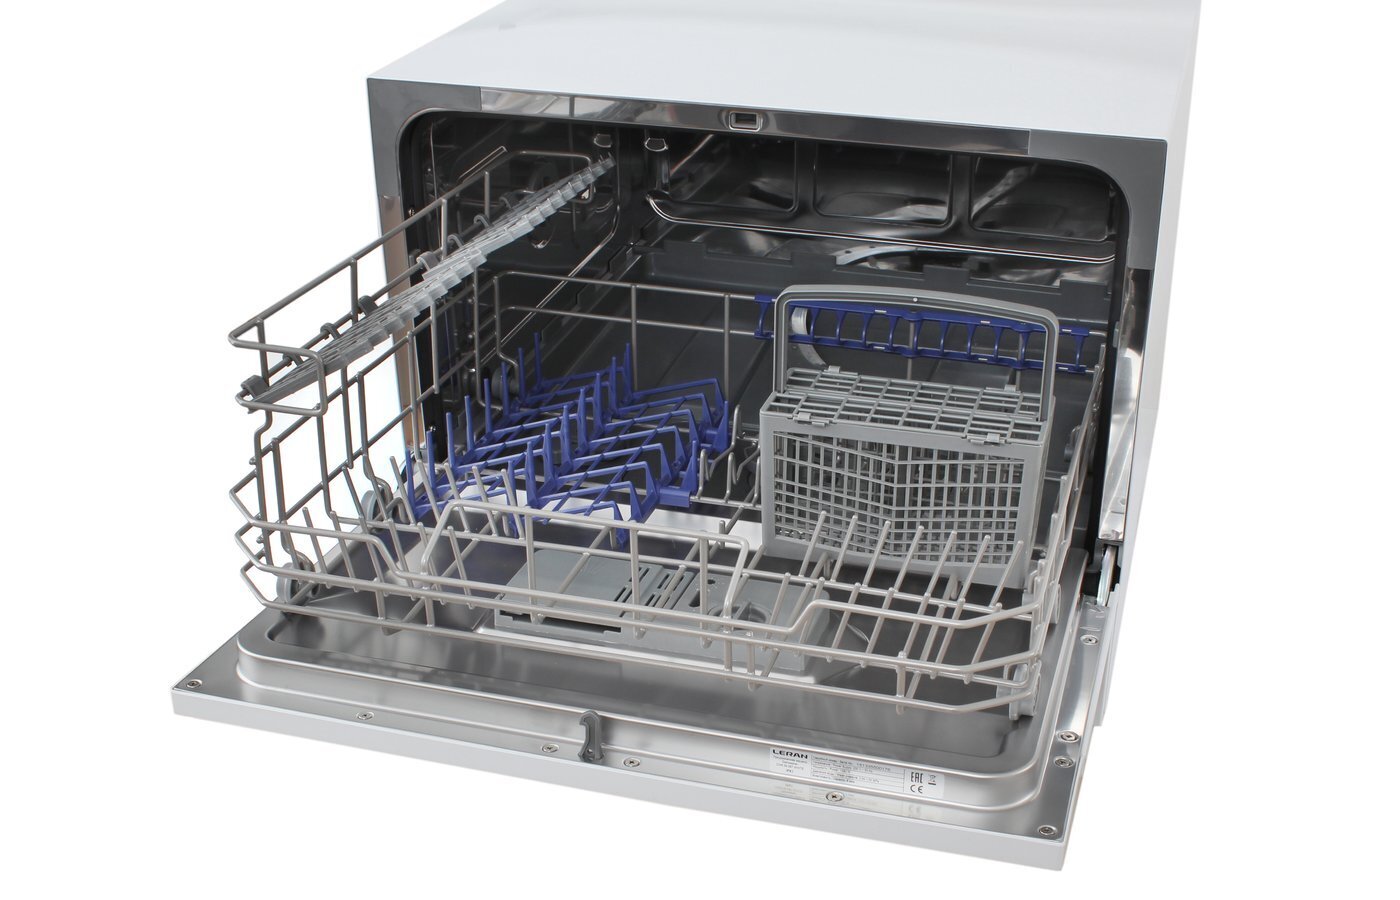 Купить настольную посудомоечную машину недорого. Посудомоечная машина Leran CDW 55-067 White. Посудомоечная машина настольная Leran CDW 55-067 White. Посудомоечная машина Leran 55-067. Леран посудомоечная машина настольная.